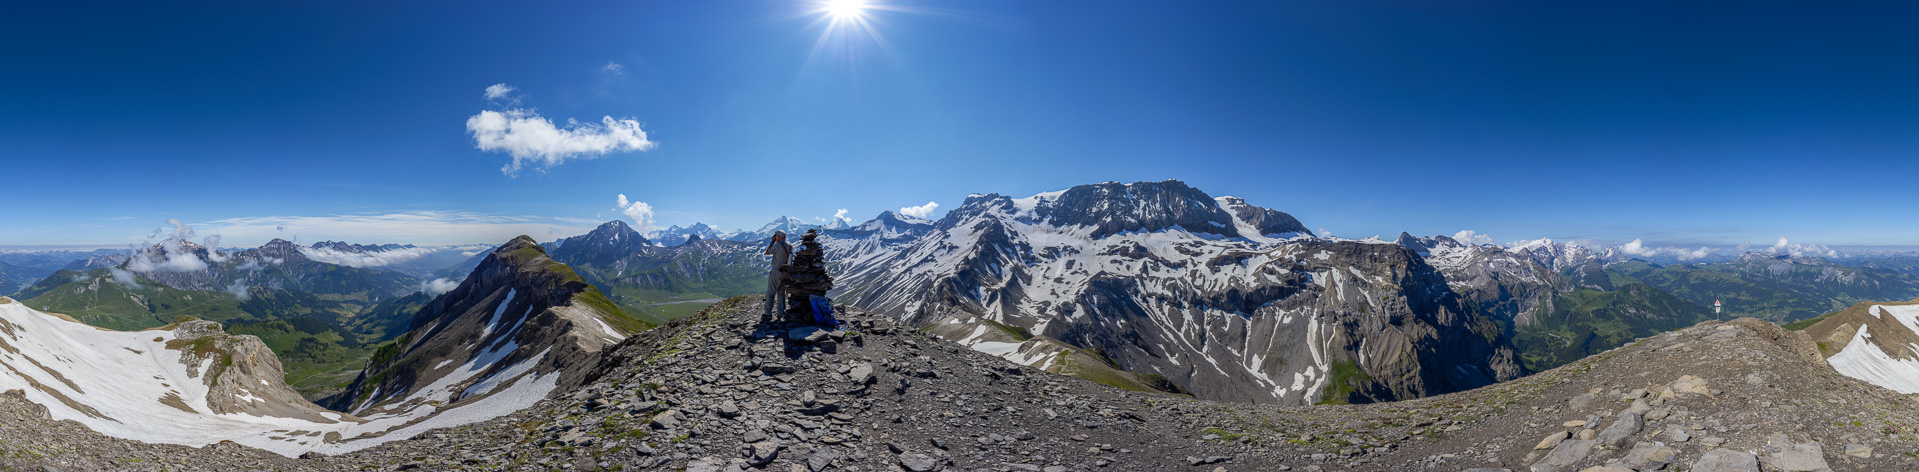 Die beeindruckende Schönheit der Berner Alpen in ein Panorama gafasst